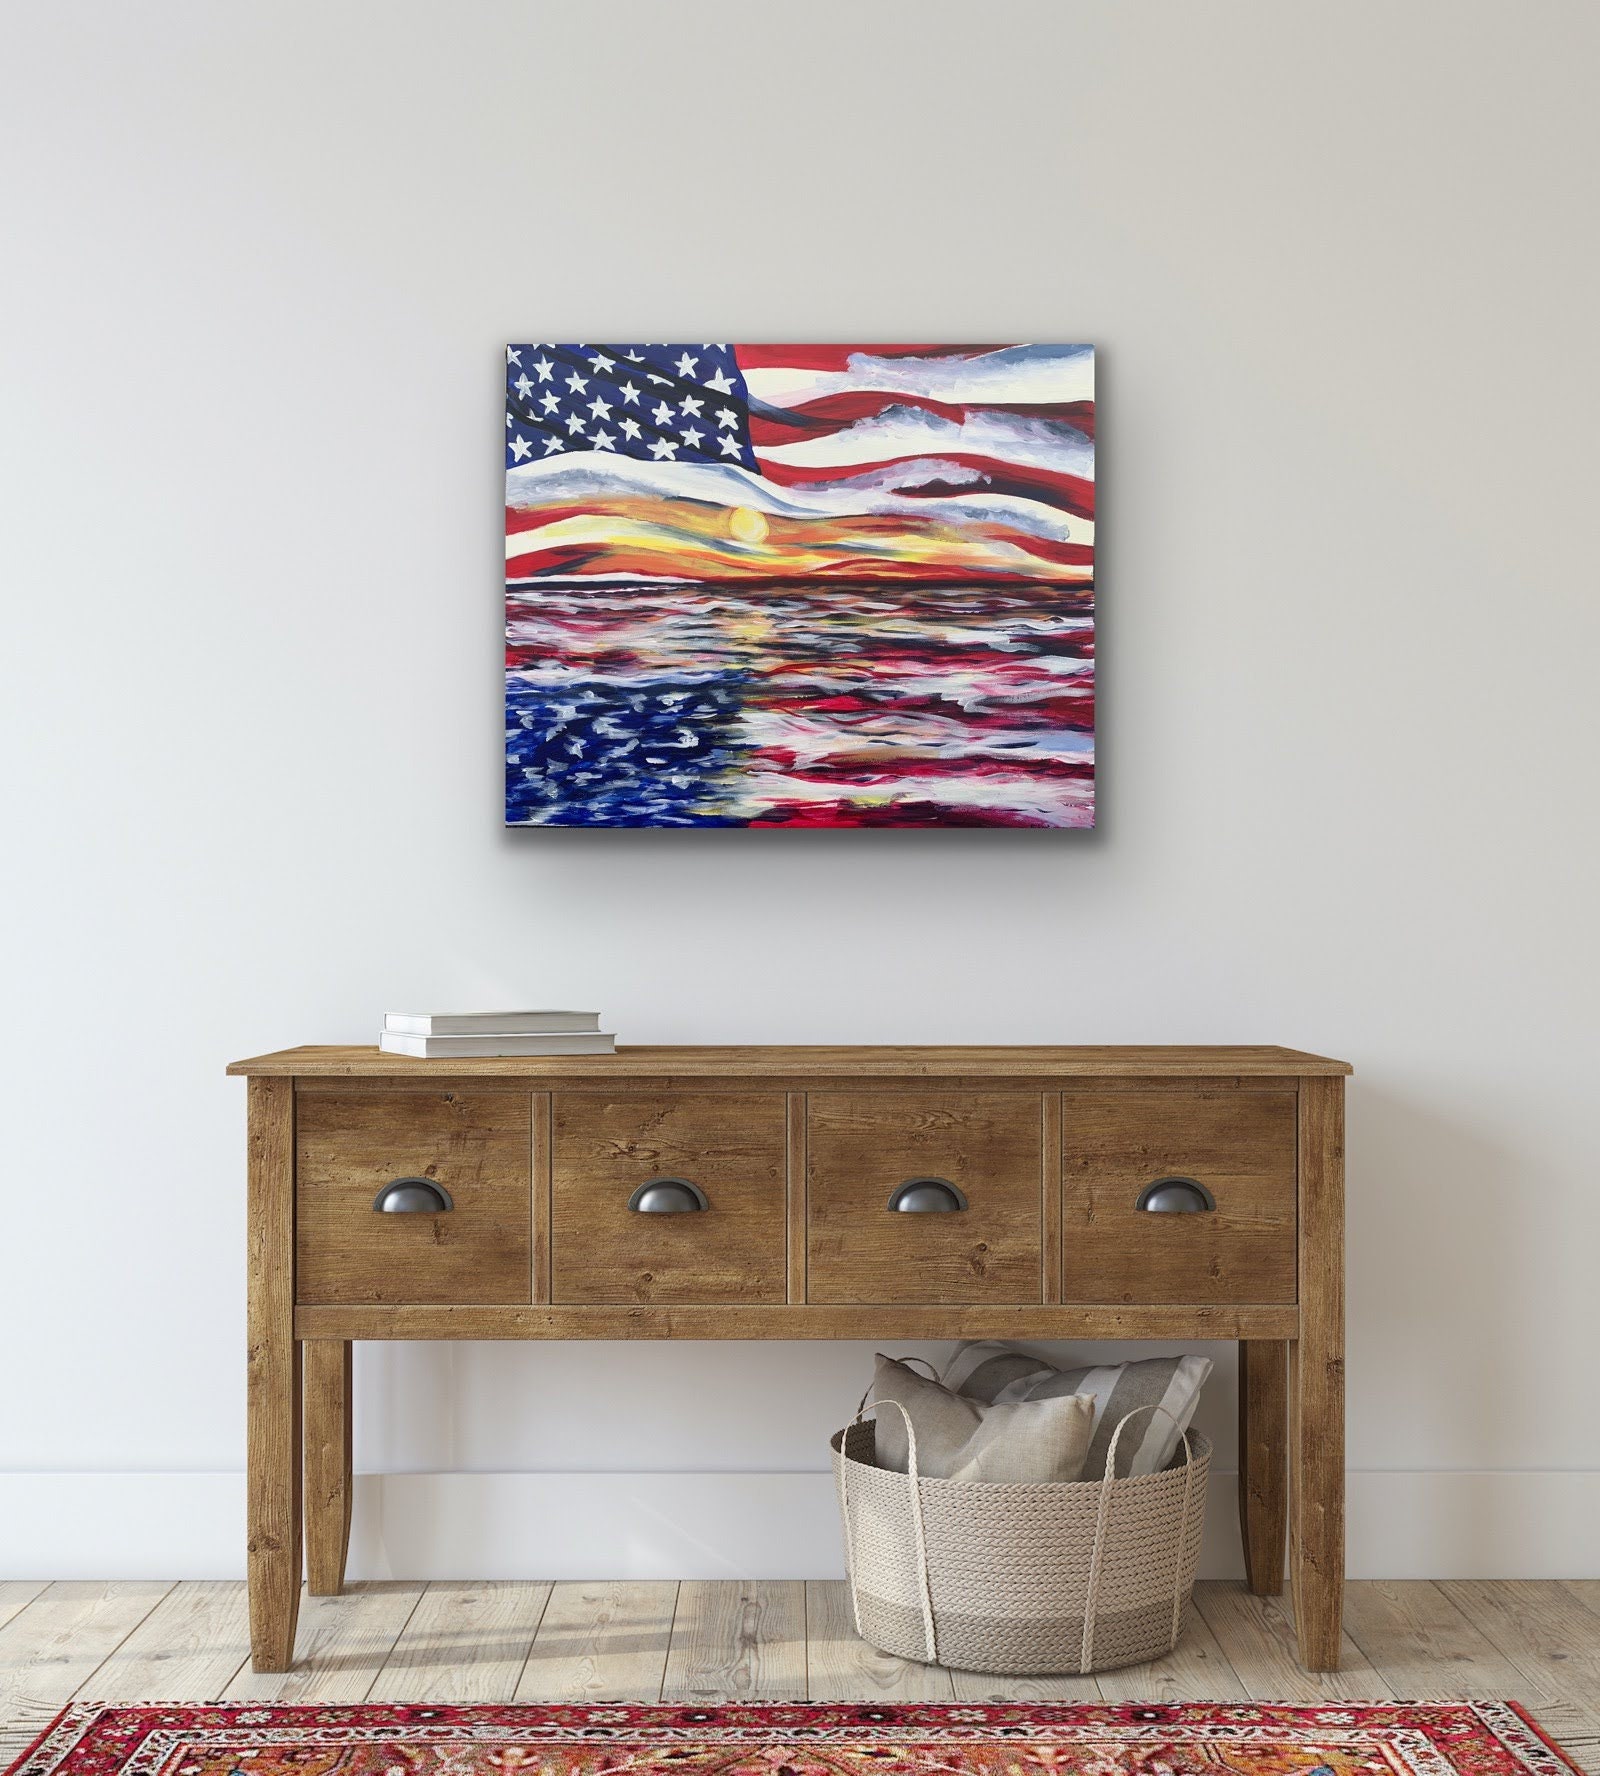 24 x 36 Canvas Wall Art Print, American Flag Home Decor #131